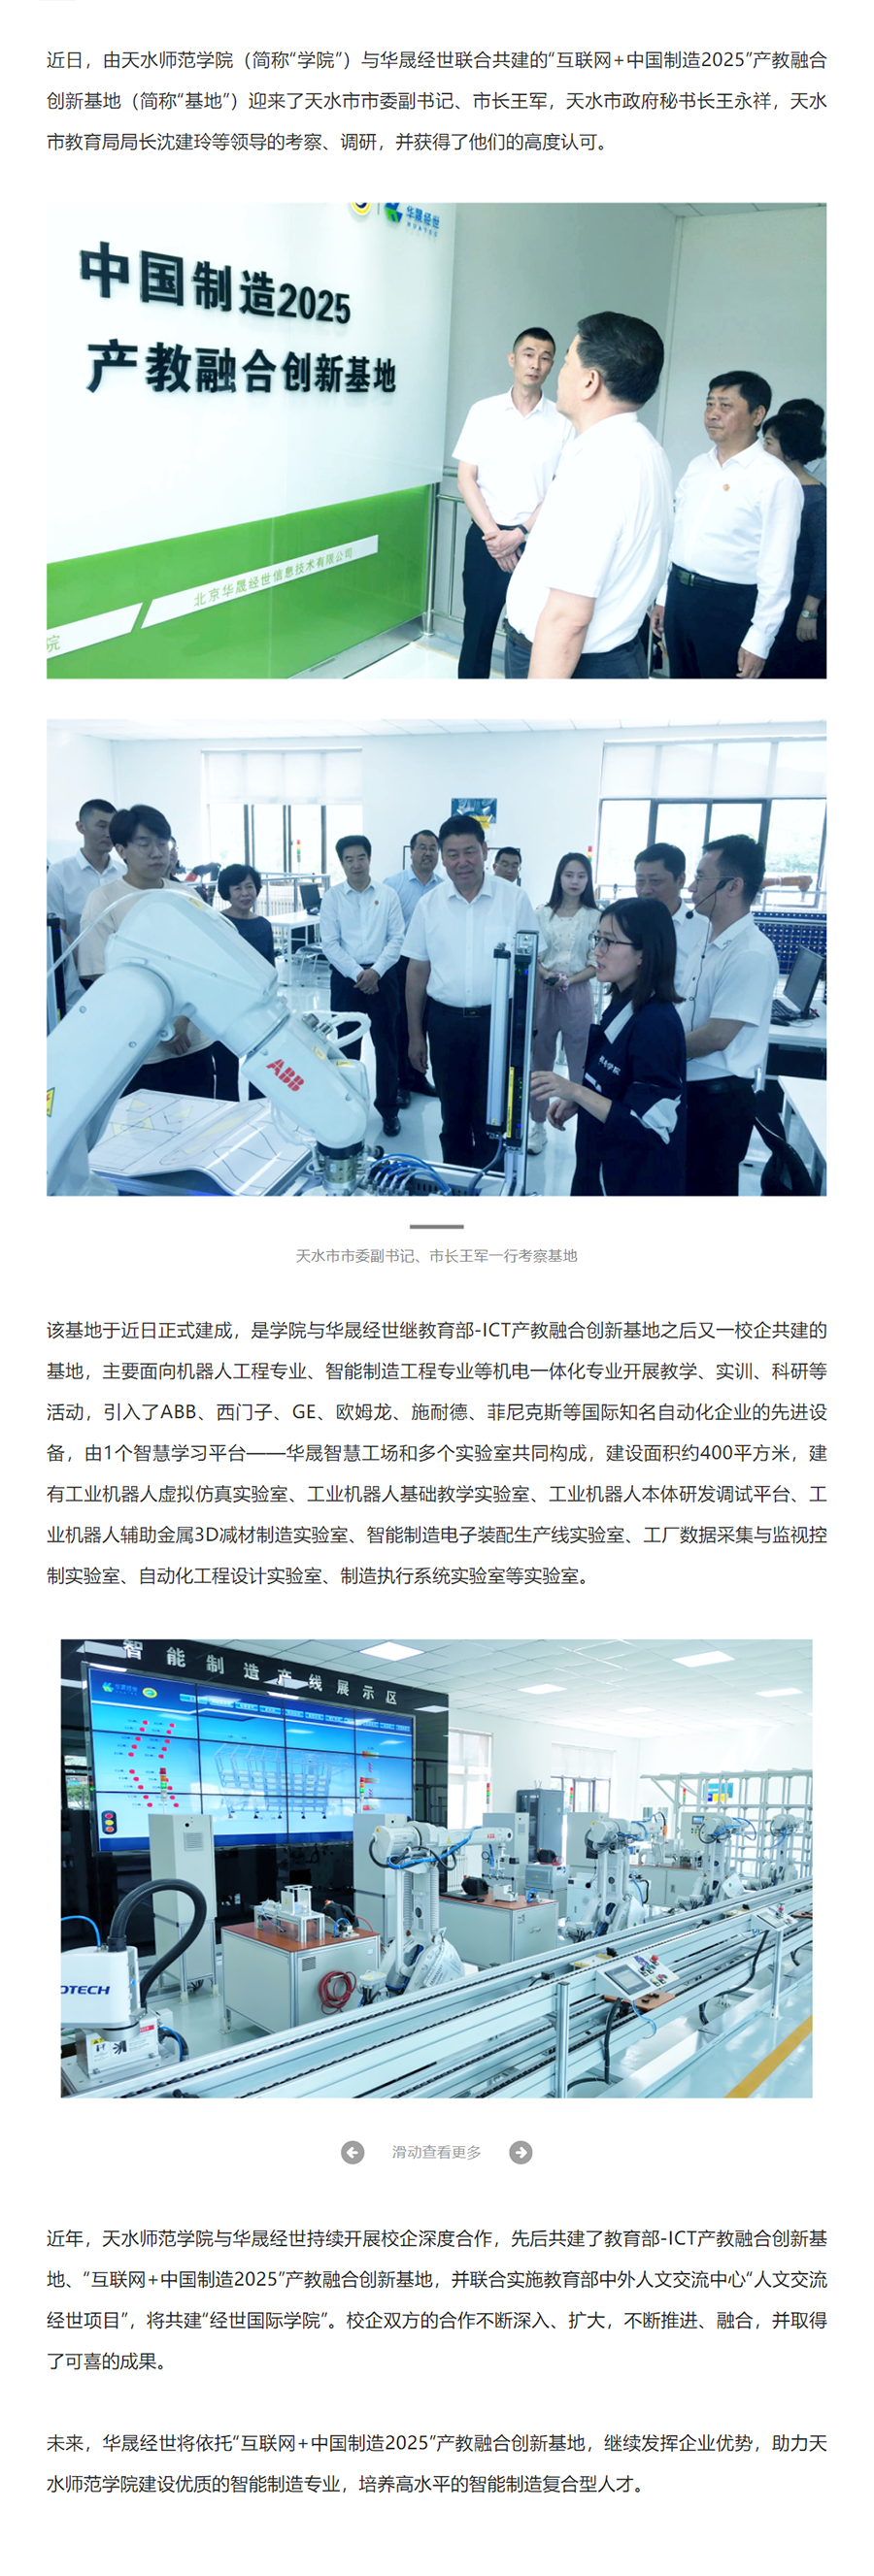 天水师范学院“互联网+中国制造2025”产教融合创新基地建成.png